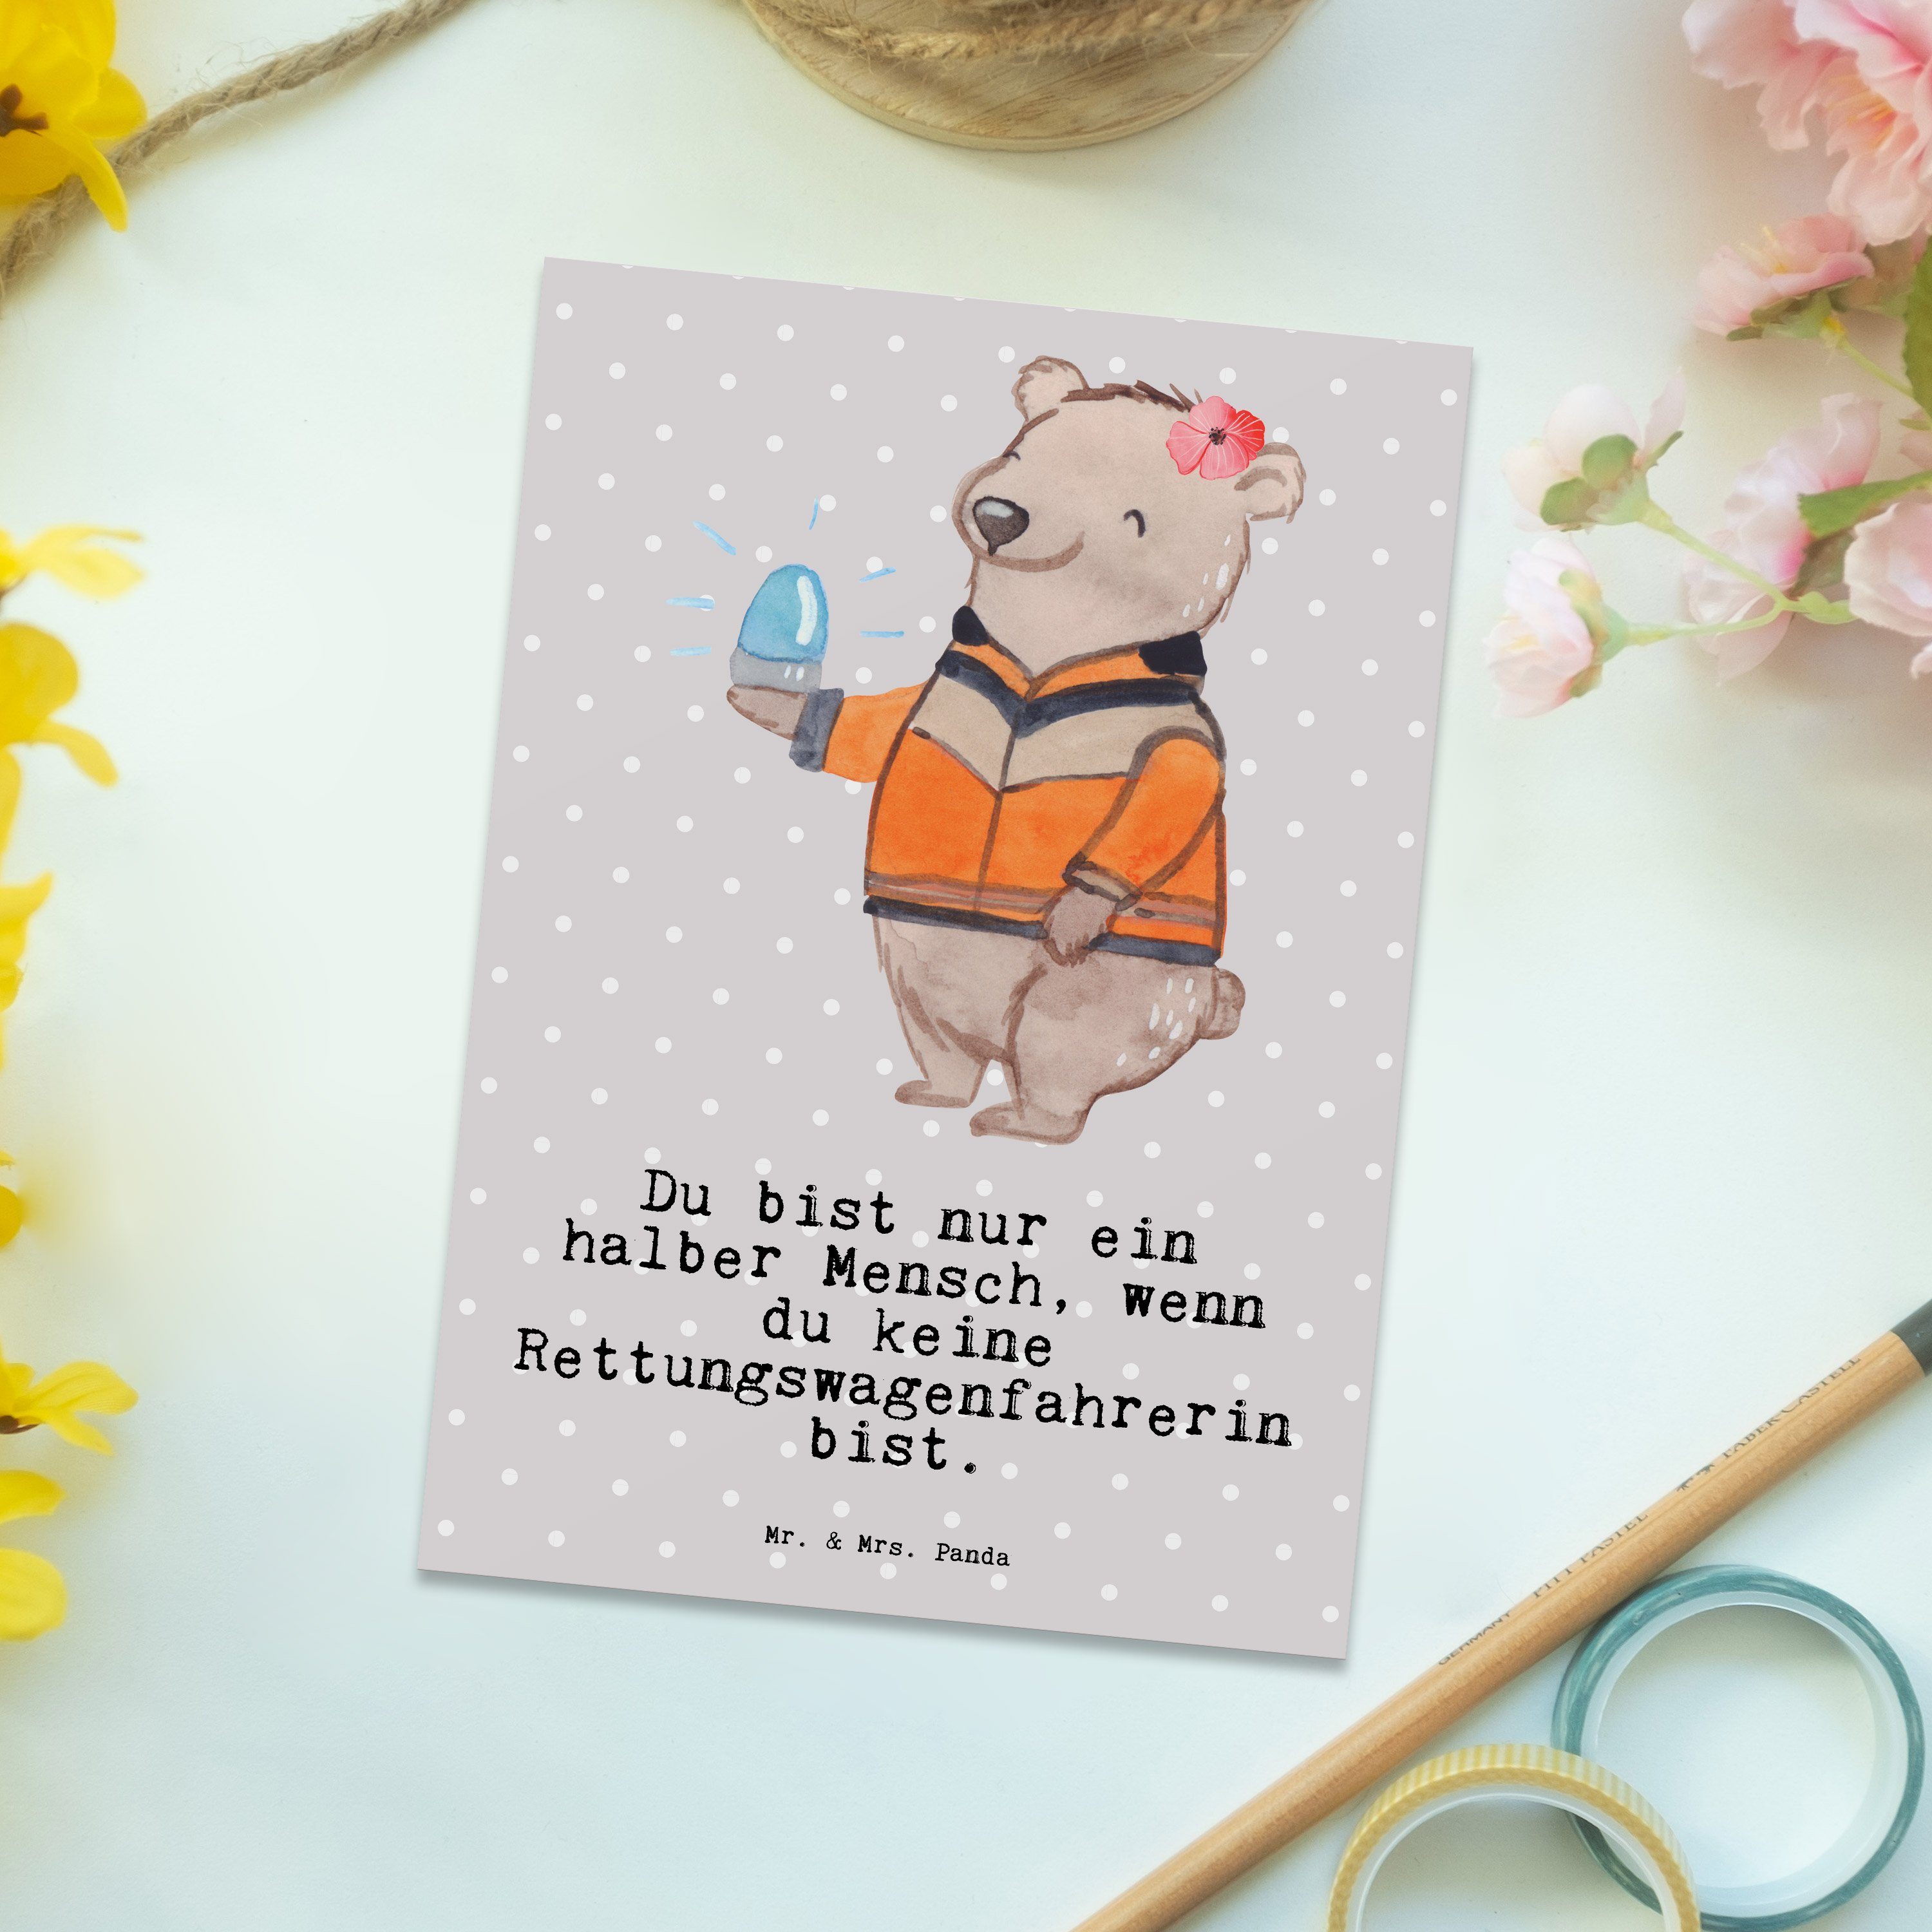 & Panda Grau mit Rettungswagenfahrerin Postkarte - Mr. Pastell Geburtstags Herz - Geschenk, Mrs.